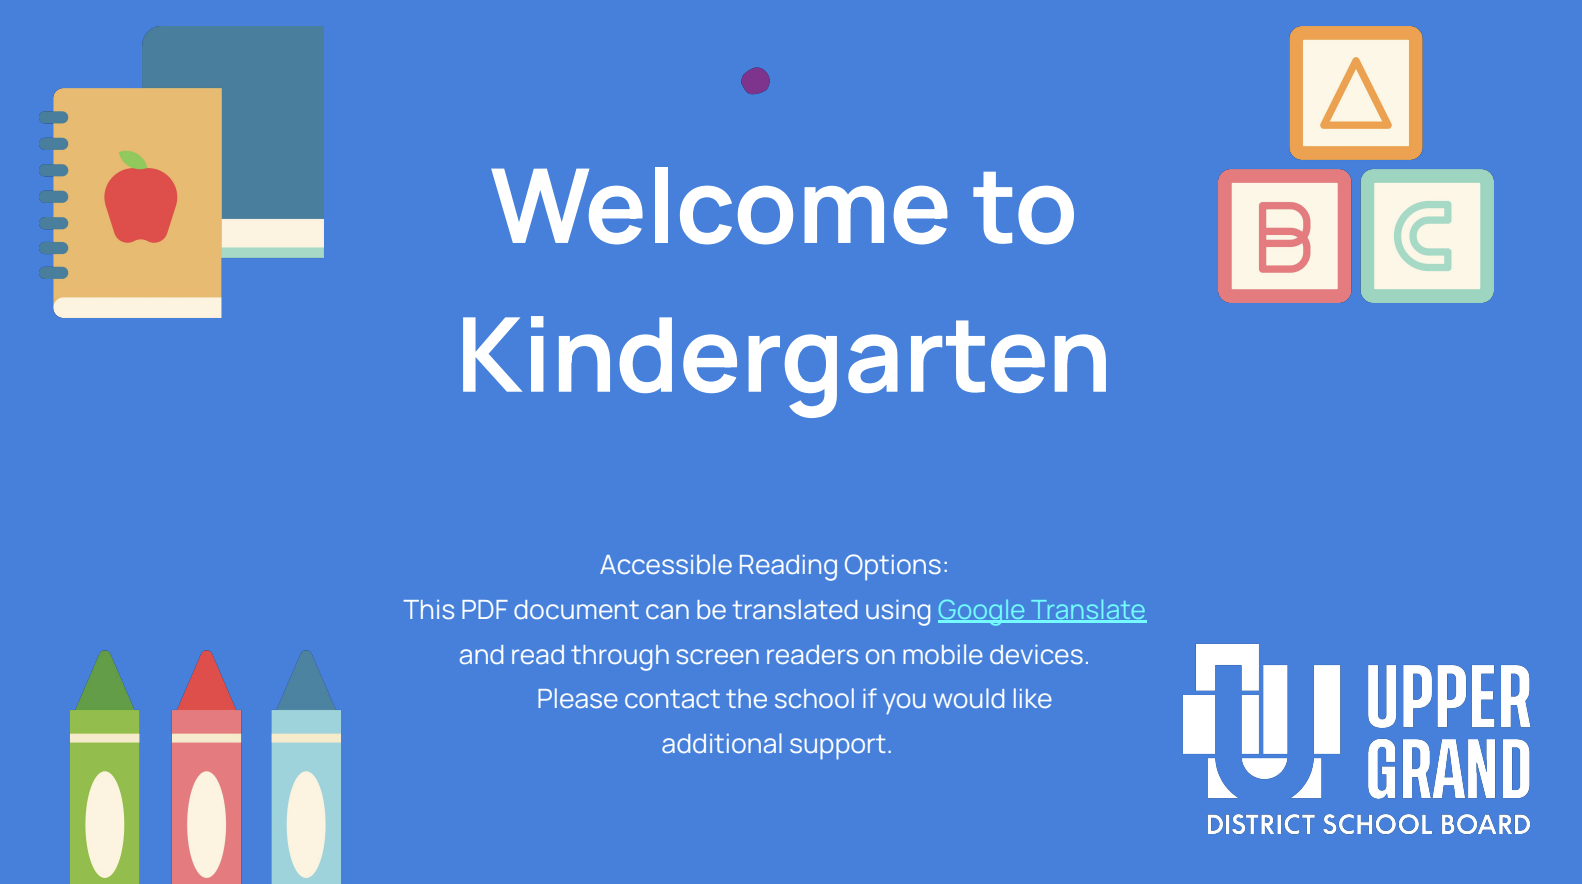 Welcome to Kindergarten text